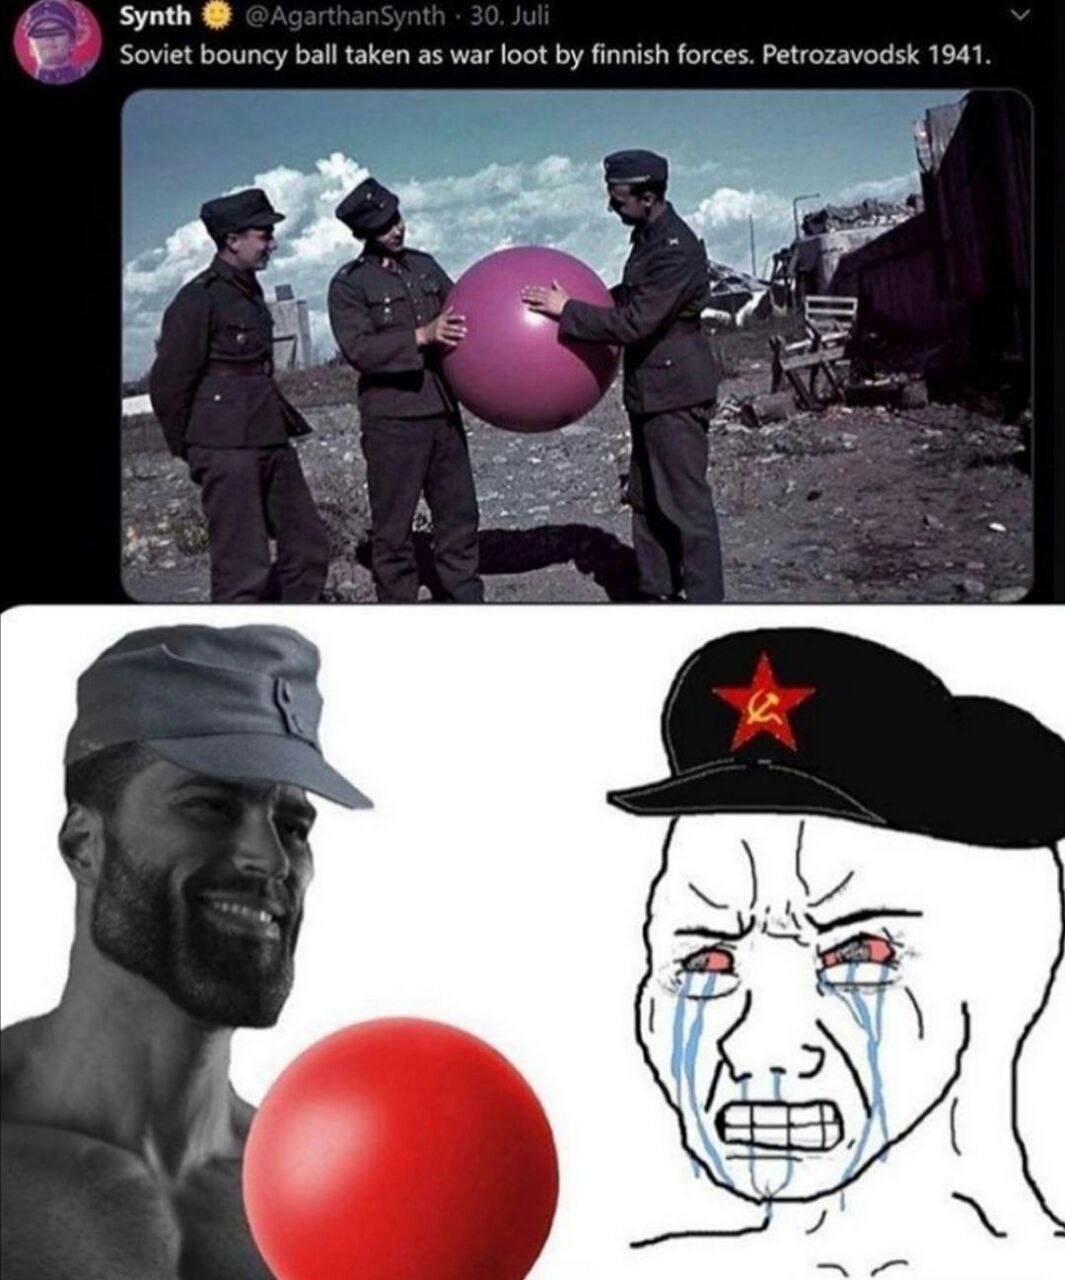 Bola saltitante soviética tomada como saque de guerra pelas forças finlândesas - meme